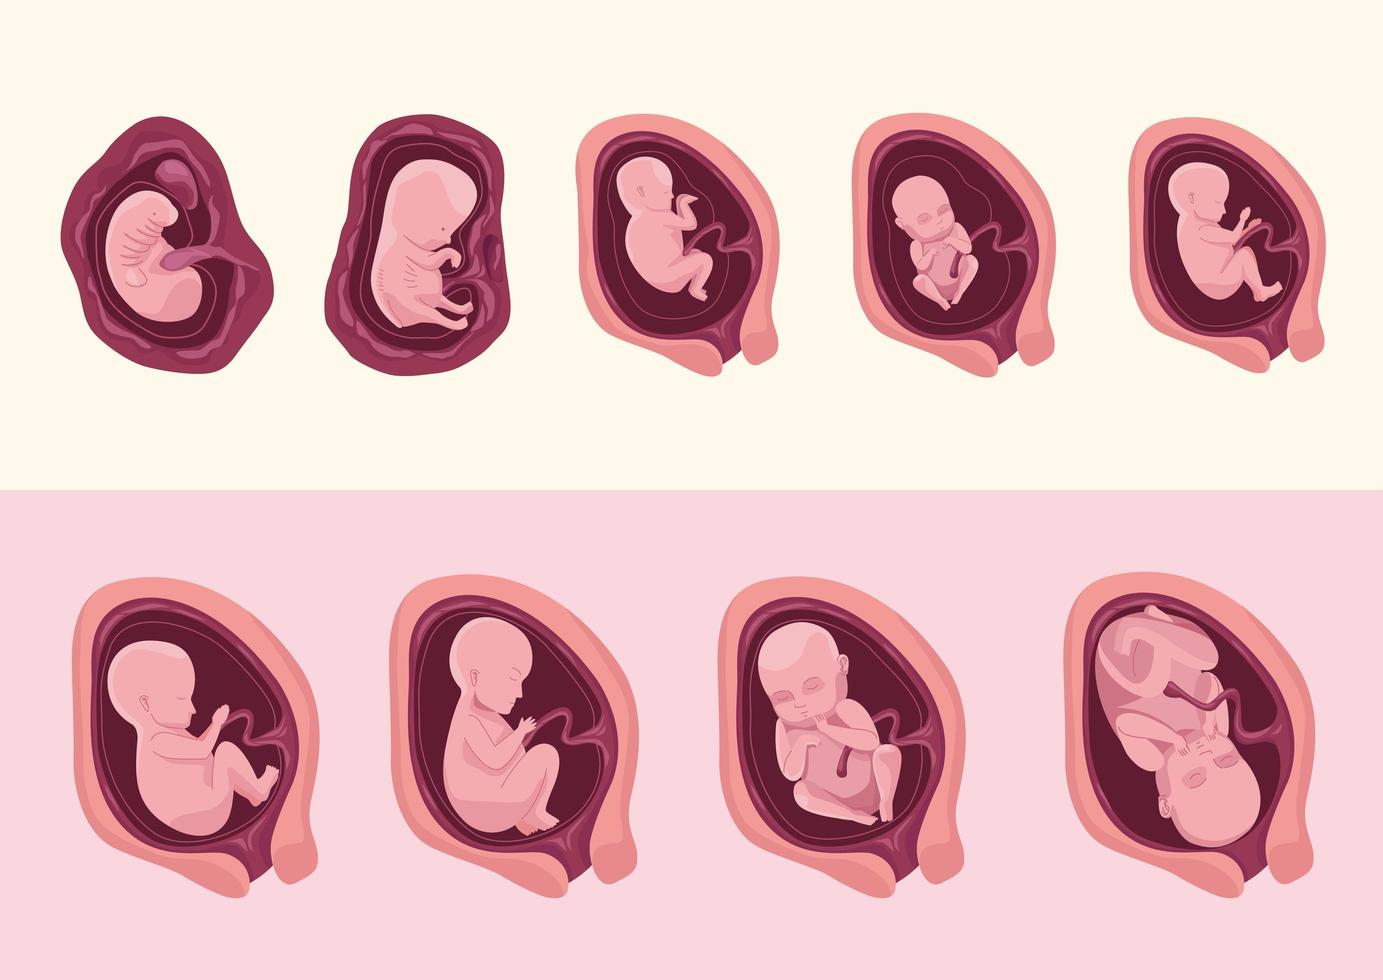 embryo development nine icons vector